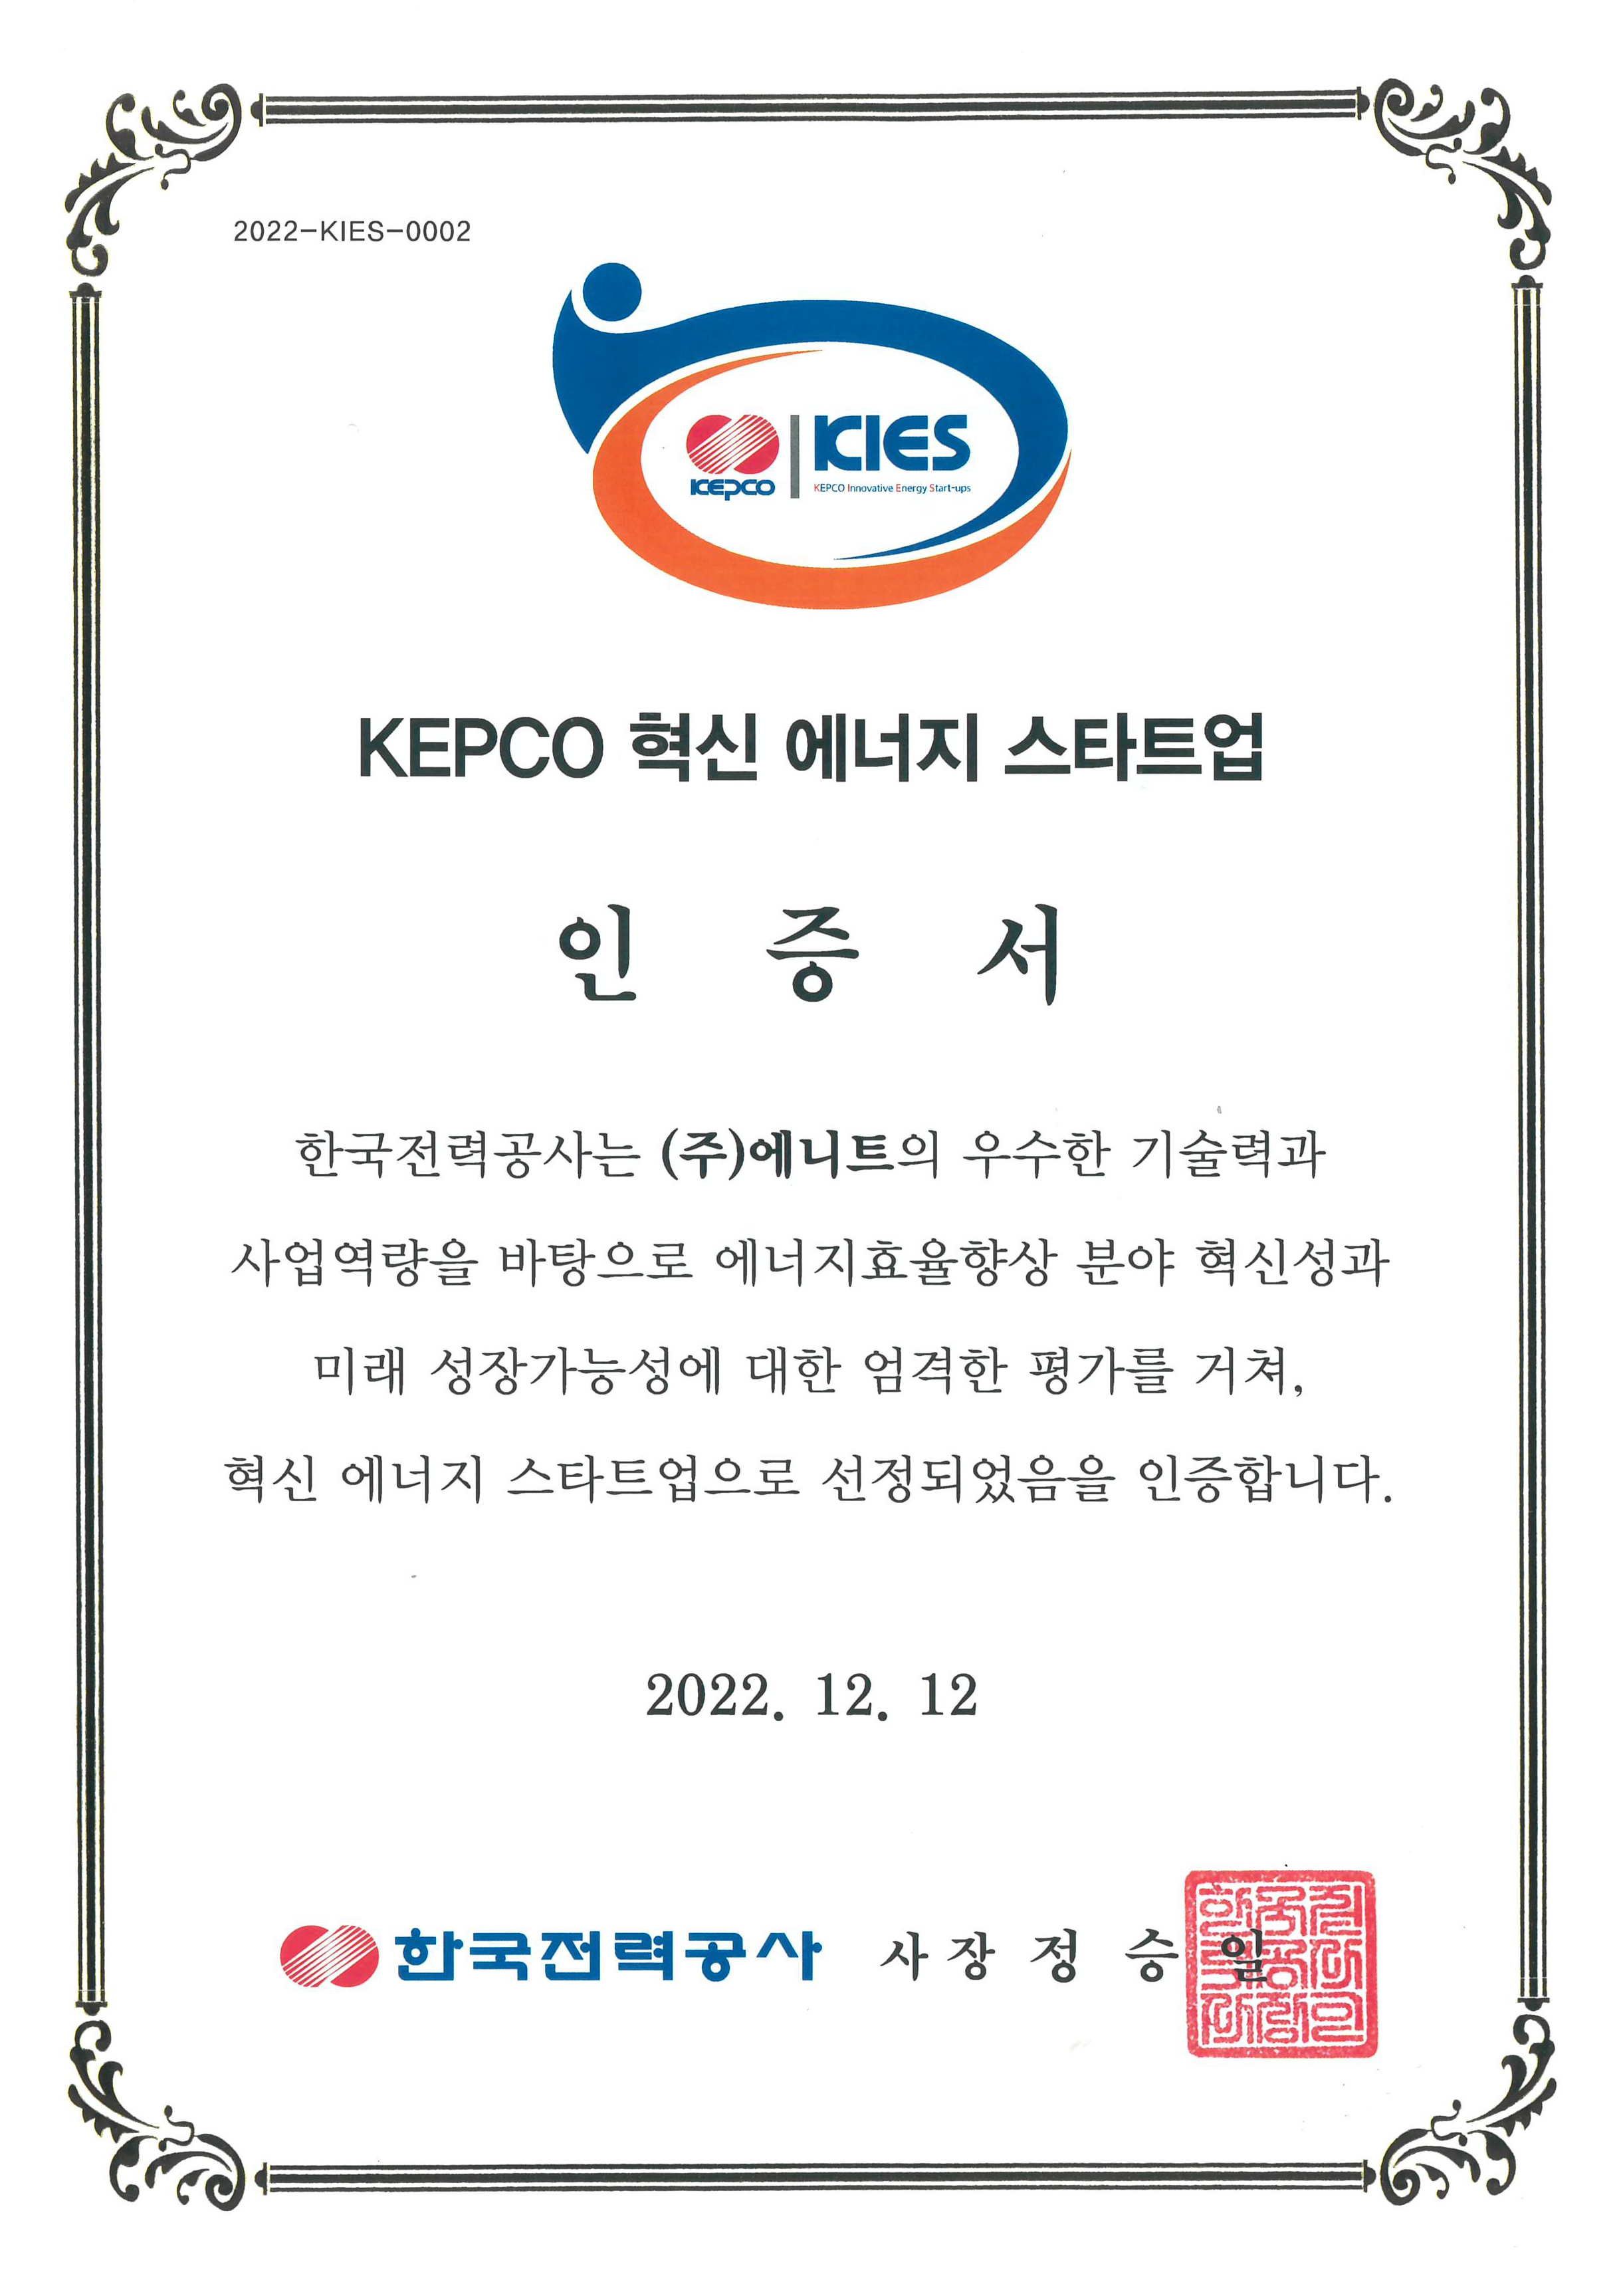 [인증서]KEPCO 혁신 에너지 스타트업 인증